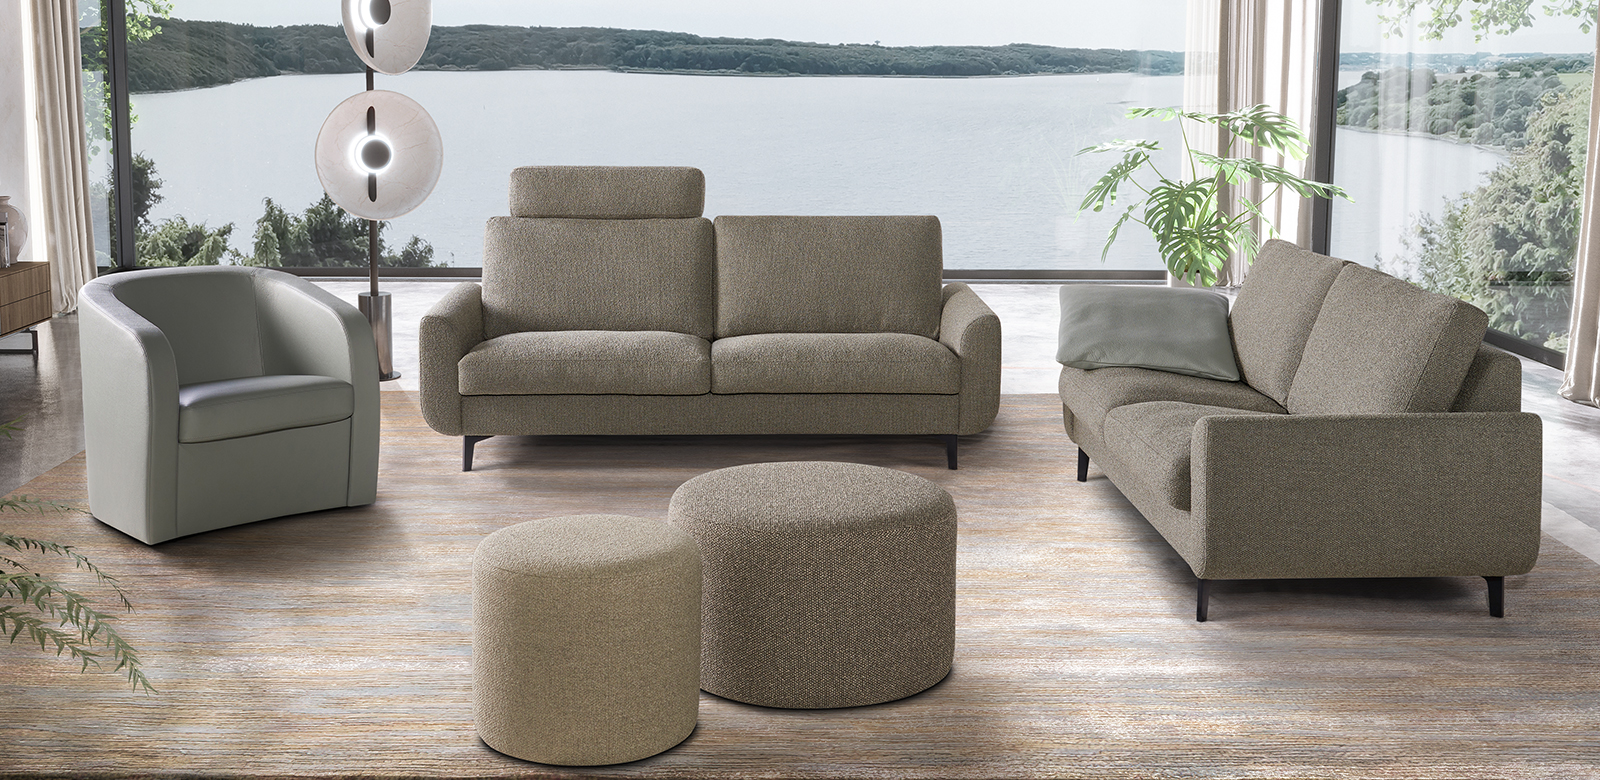 Zwei CL830 Sofas aus grau-braunem Stoff mit runden Hockern und passendem Sessel aus grauem Leder im modernem Wohnzimmer mit Seeblick